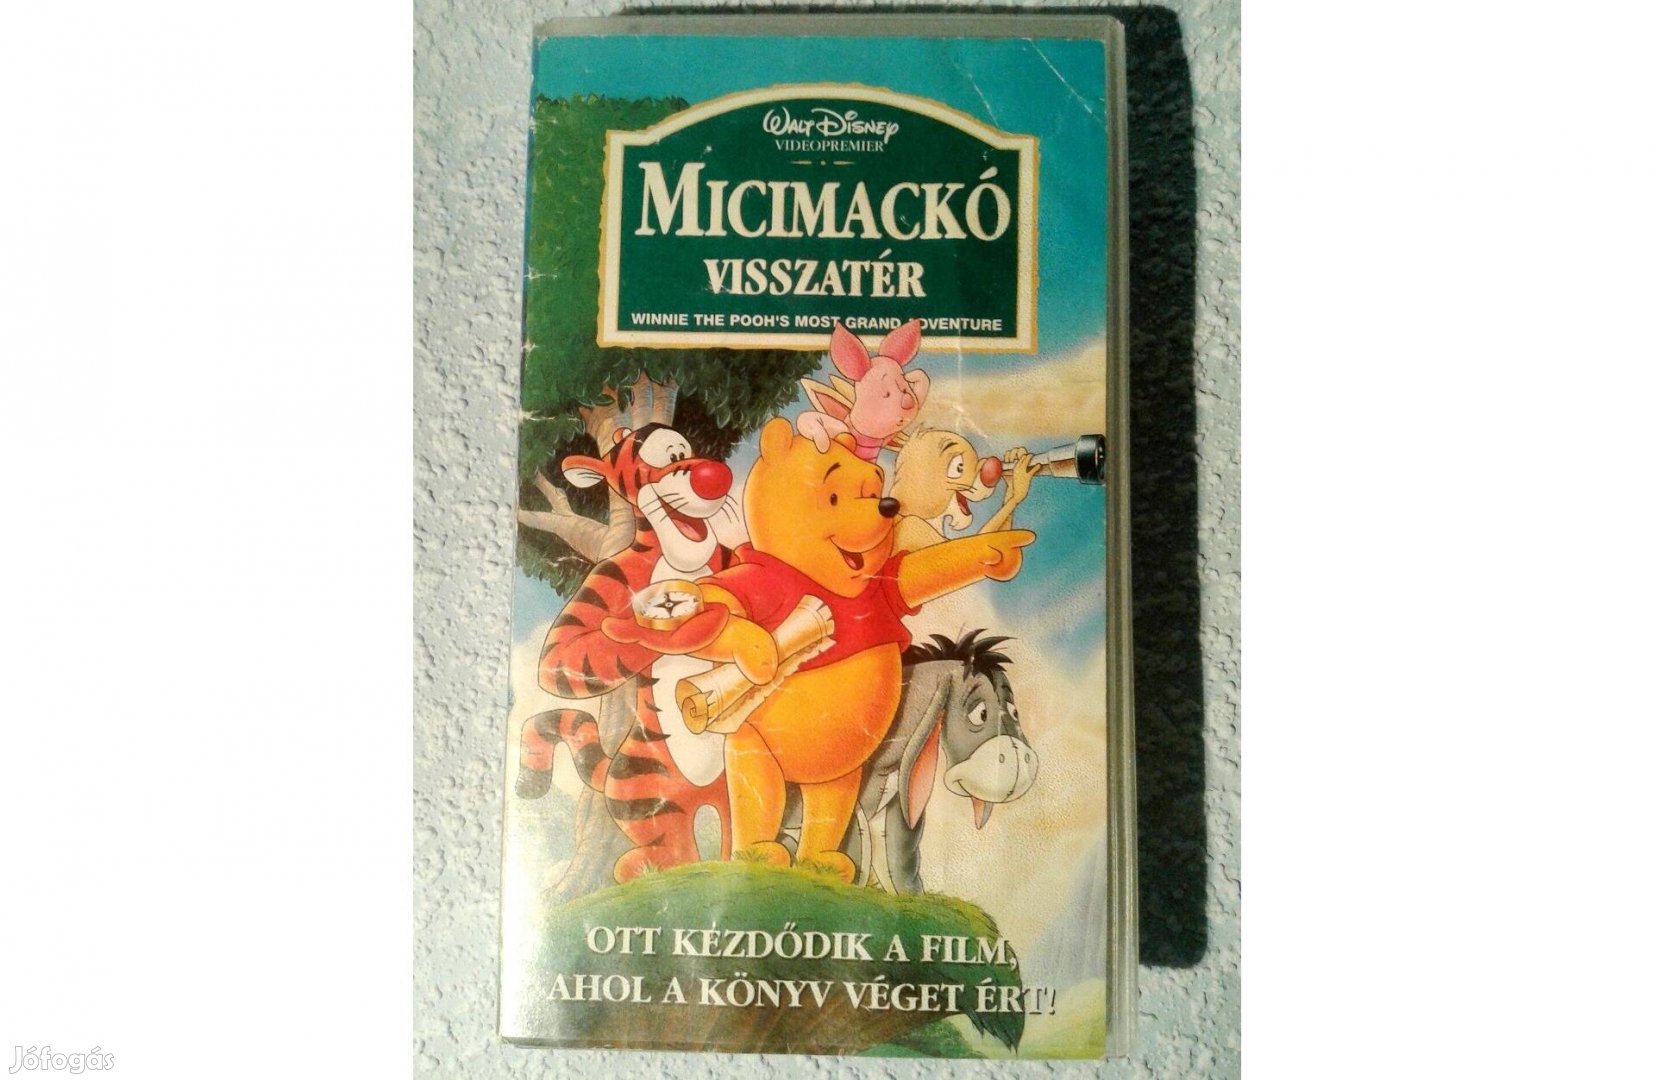 Micimackó visszatér - VHS kazetta 890 Ft